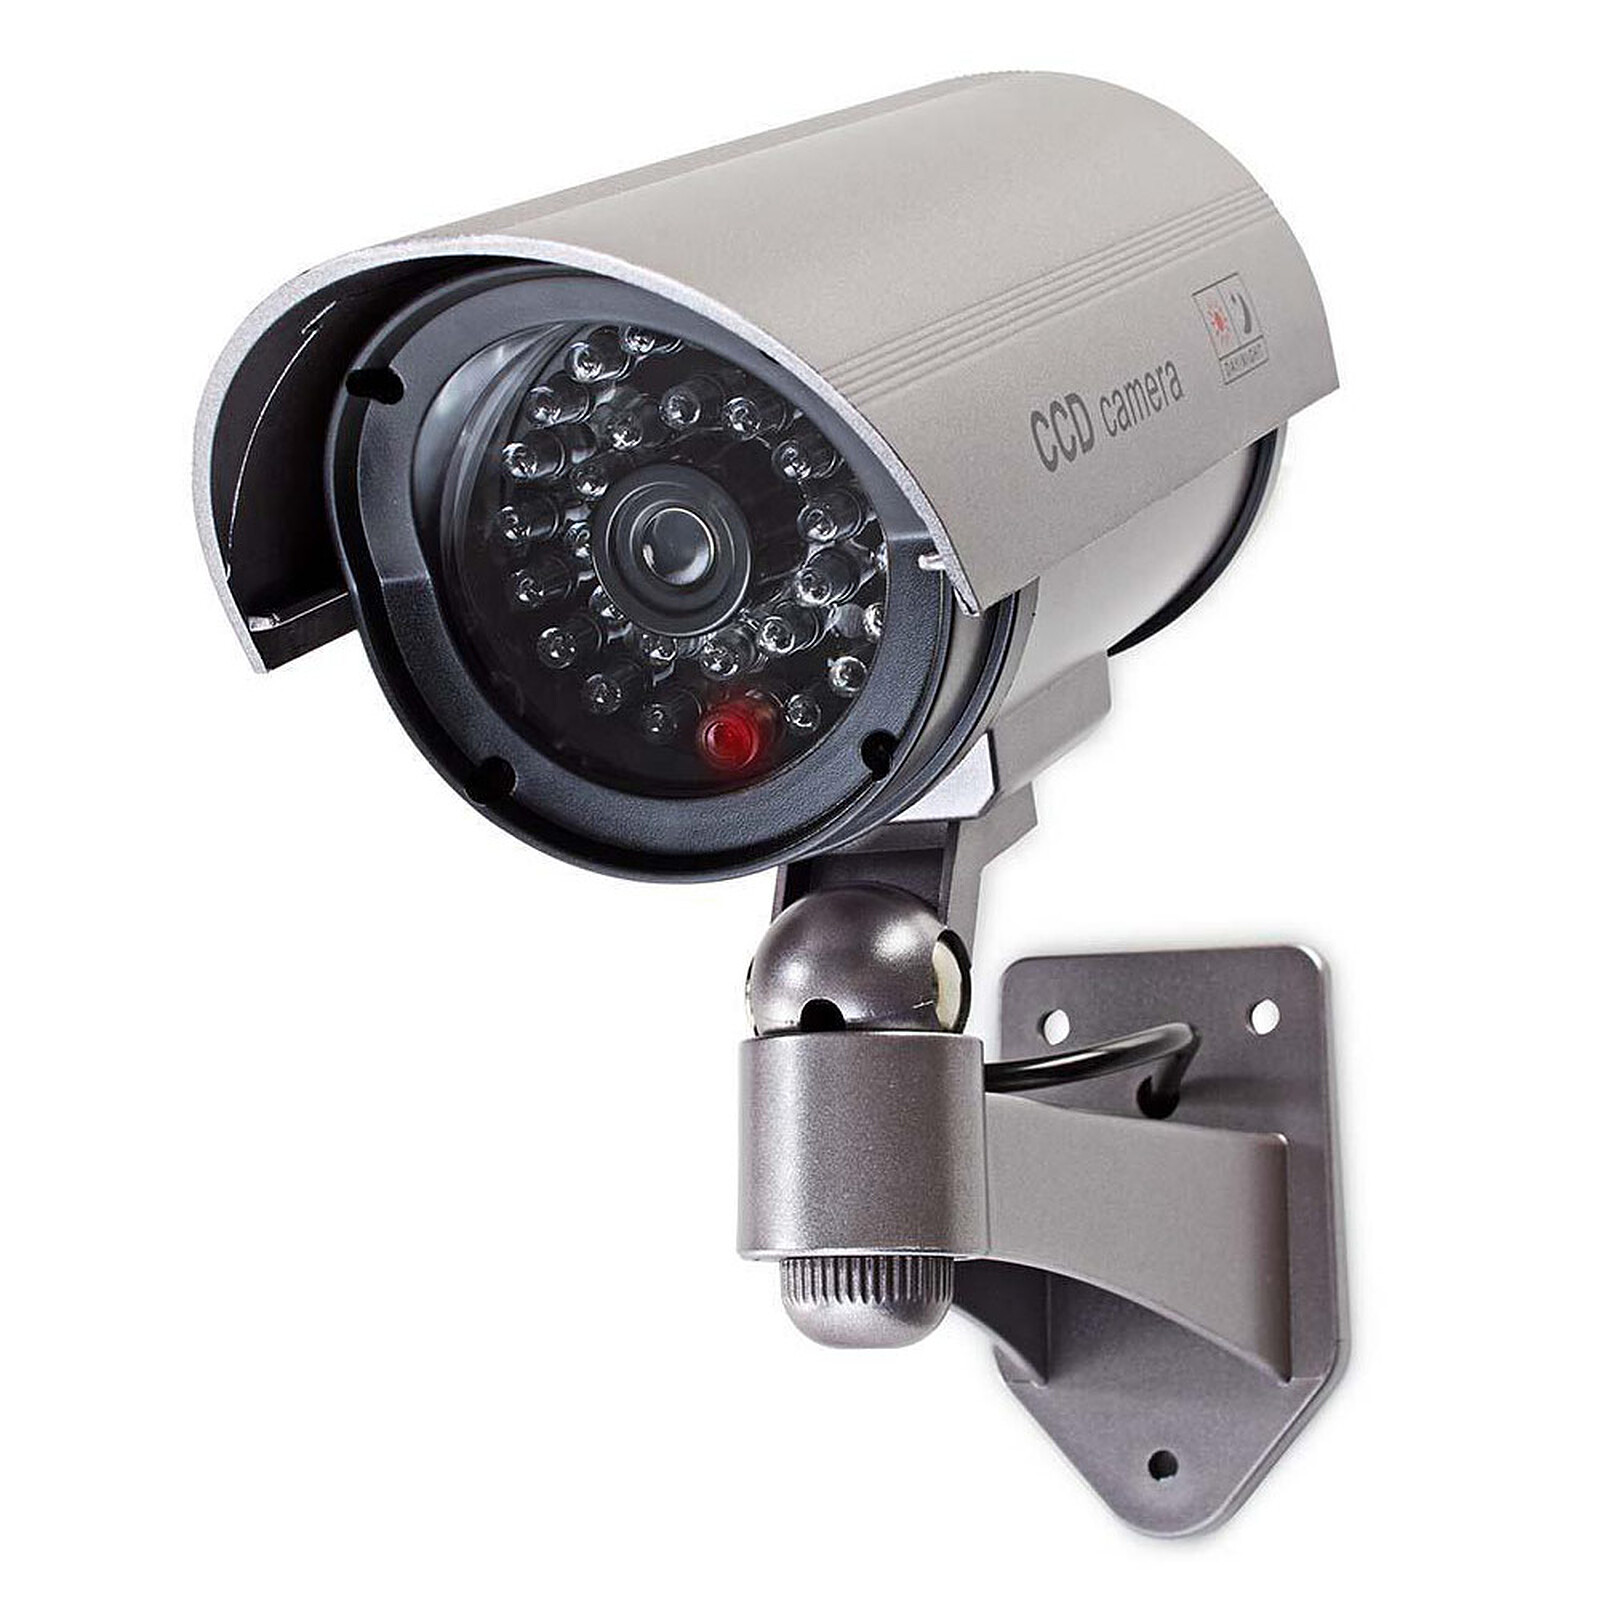 Caméra de Surveillance Extérieur Factice